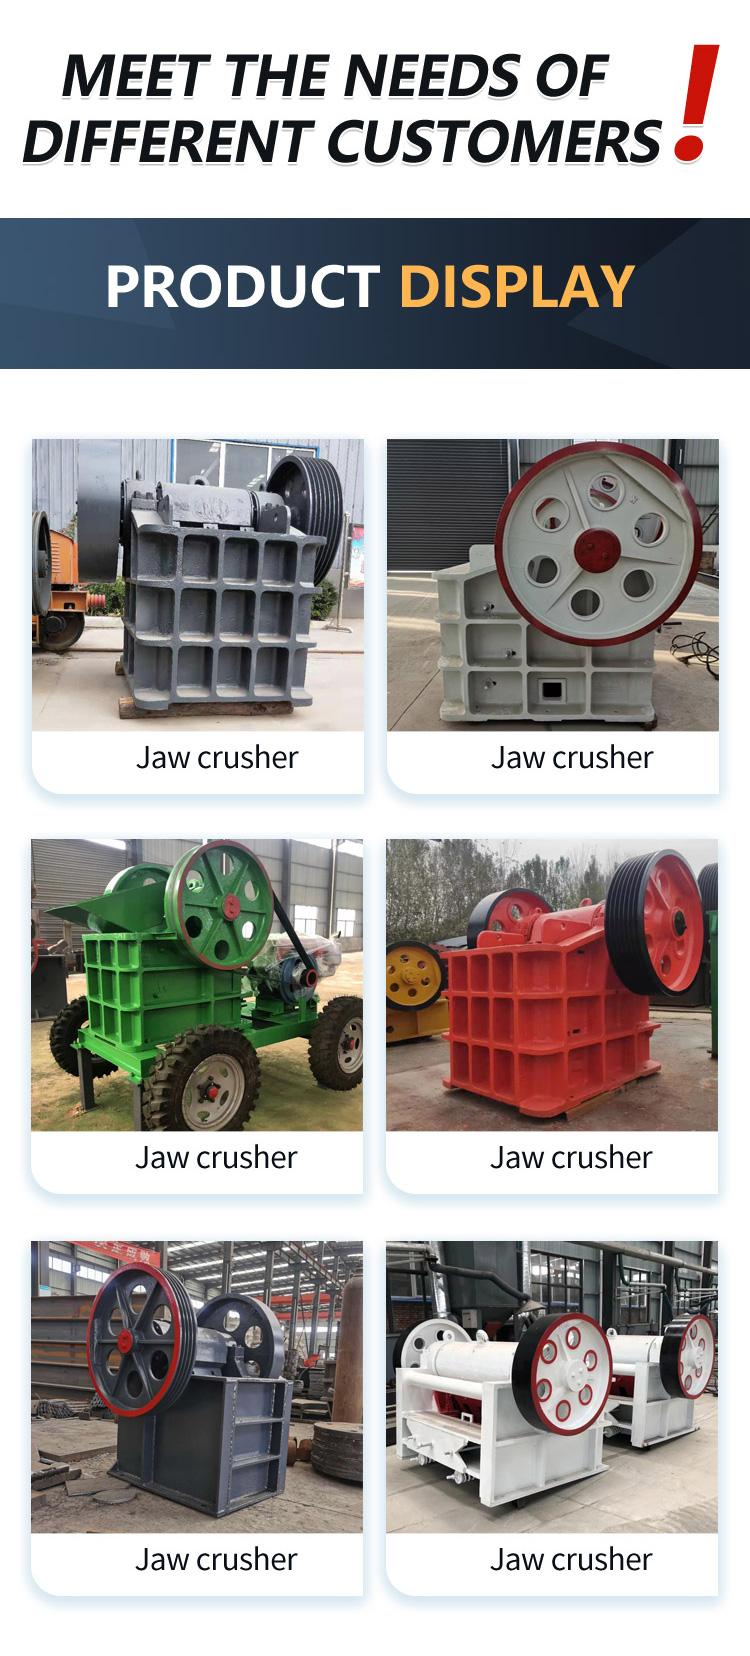 Diesel powered aluminum ore crushing equipment, gold ore jaw crusher, stone crushing machinery, mobile Xinli